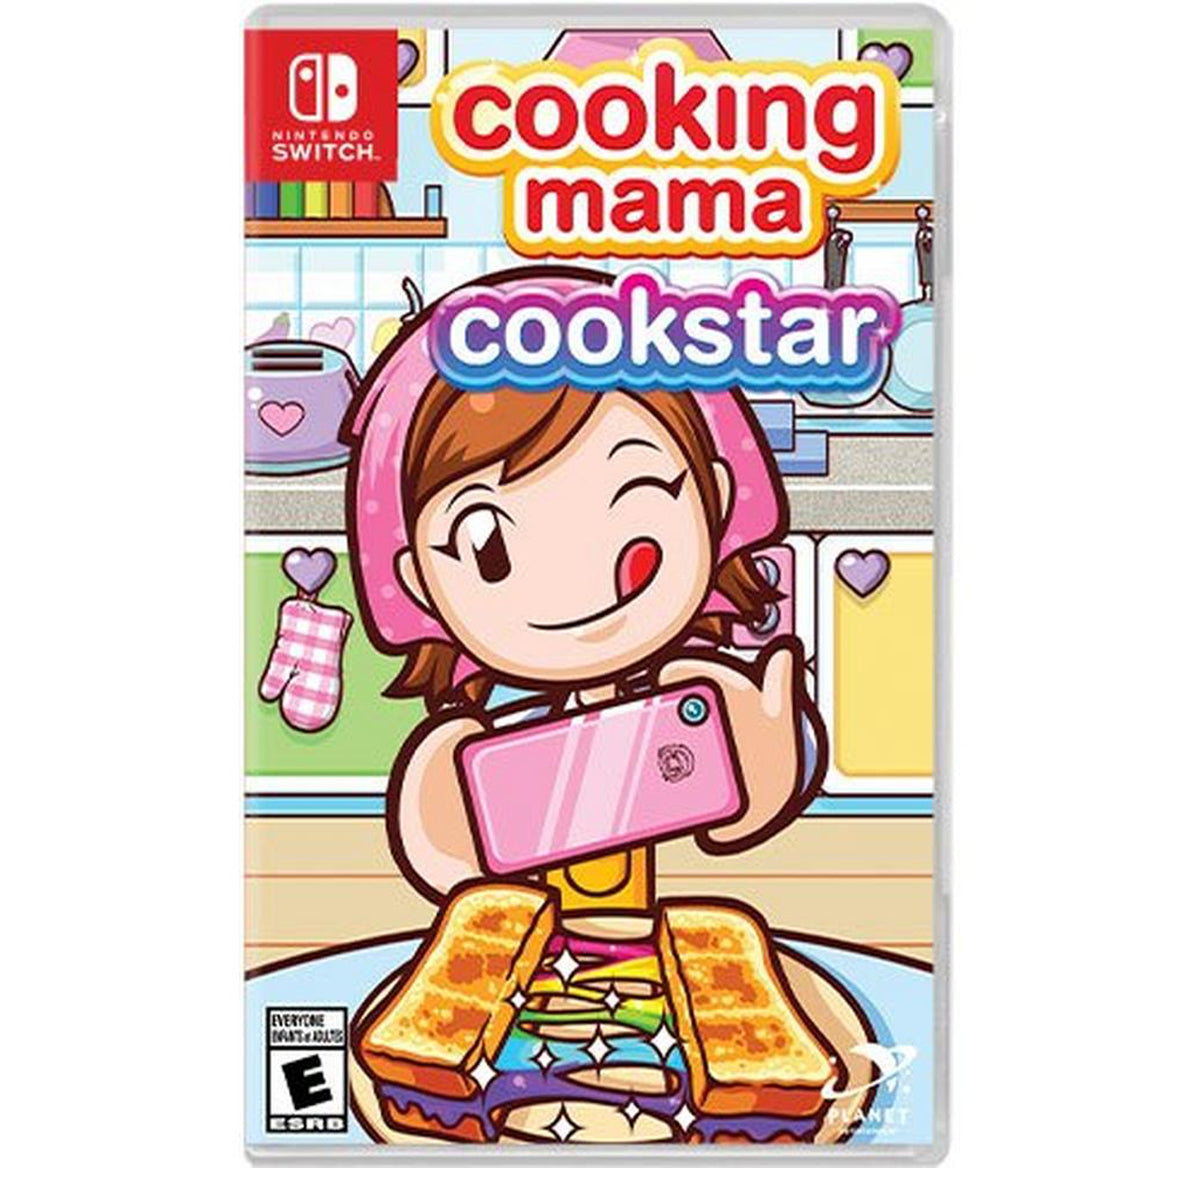 shop.cookingmamacookstar.com